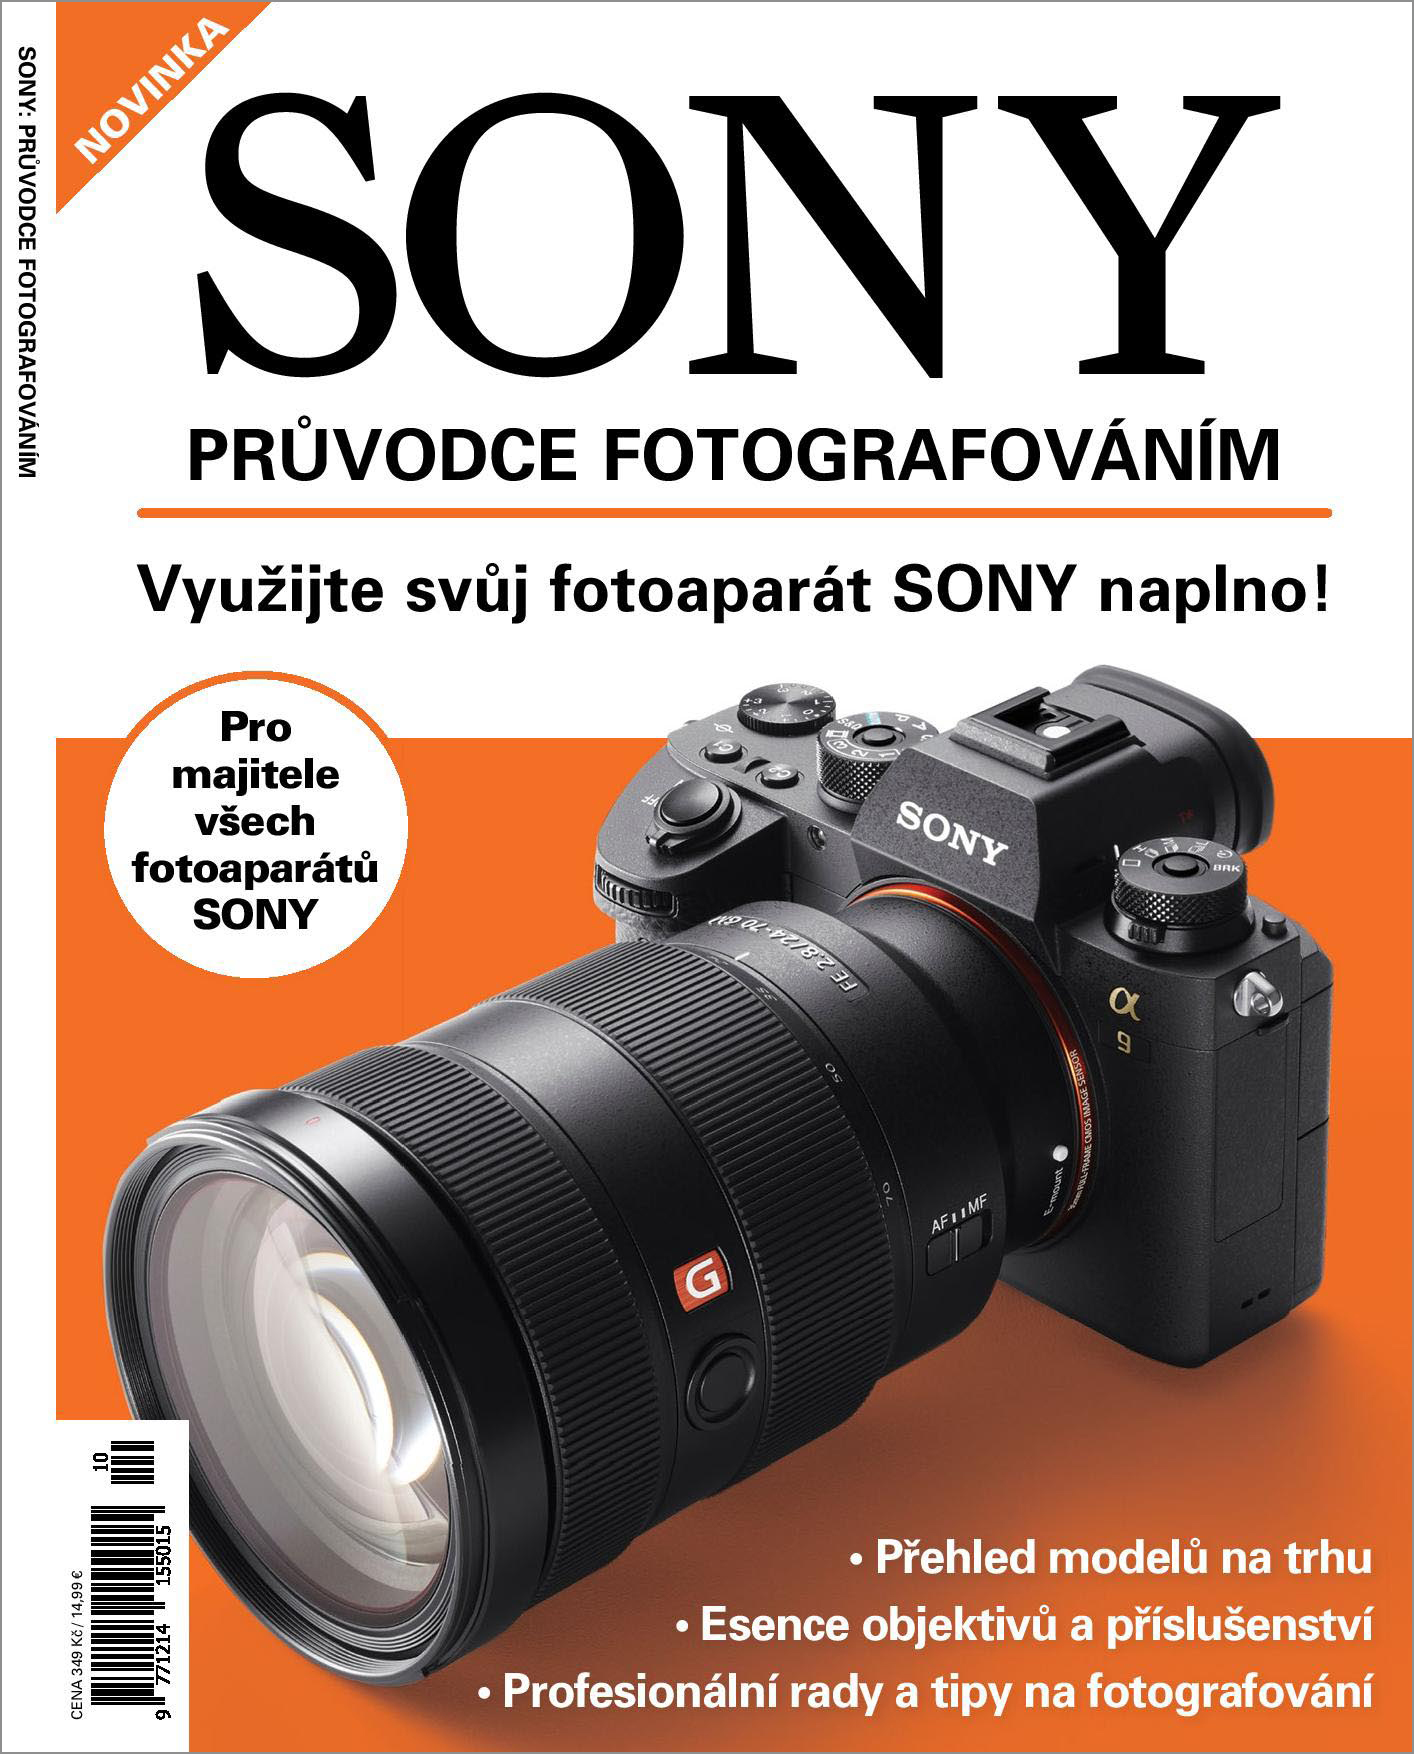 Kolektiv autorů – SONY – Průvodce fotografováním